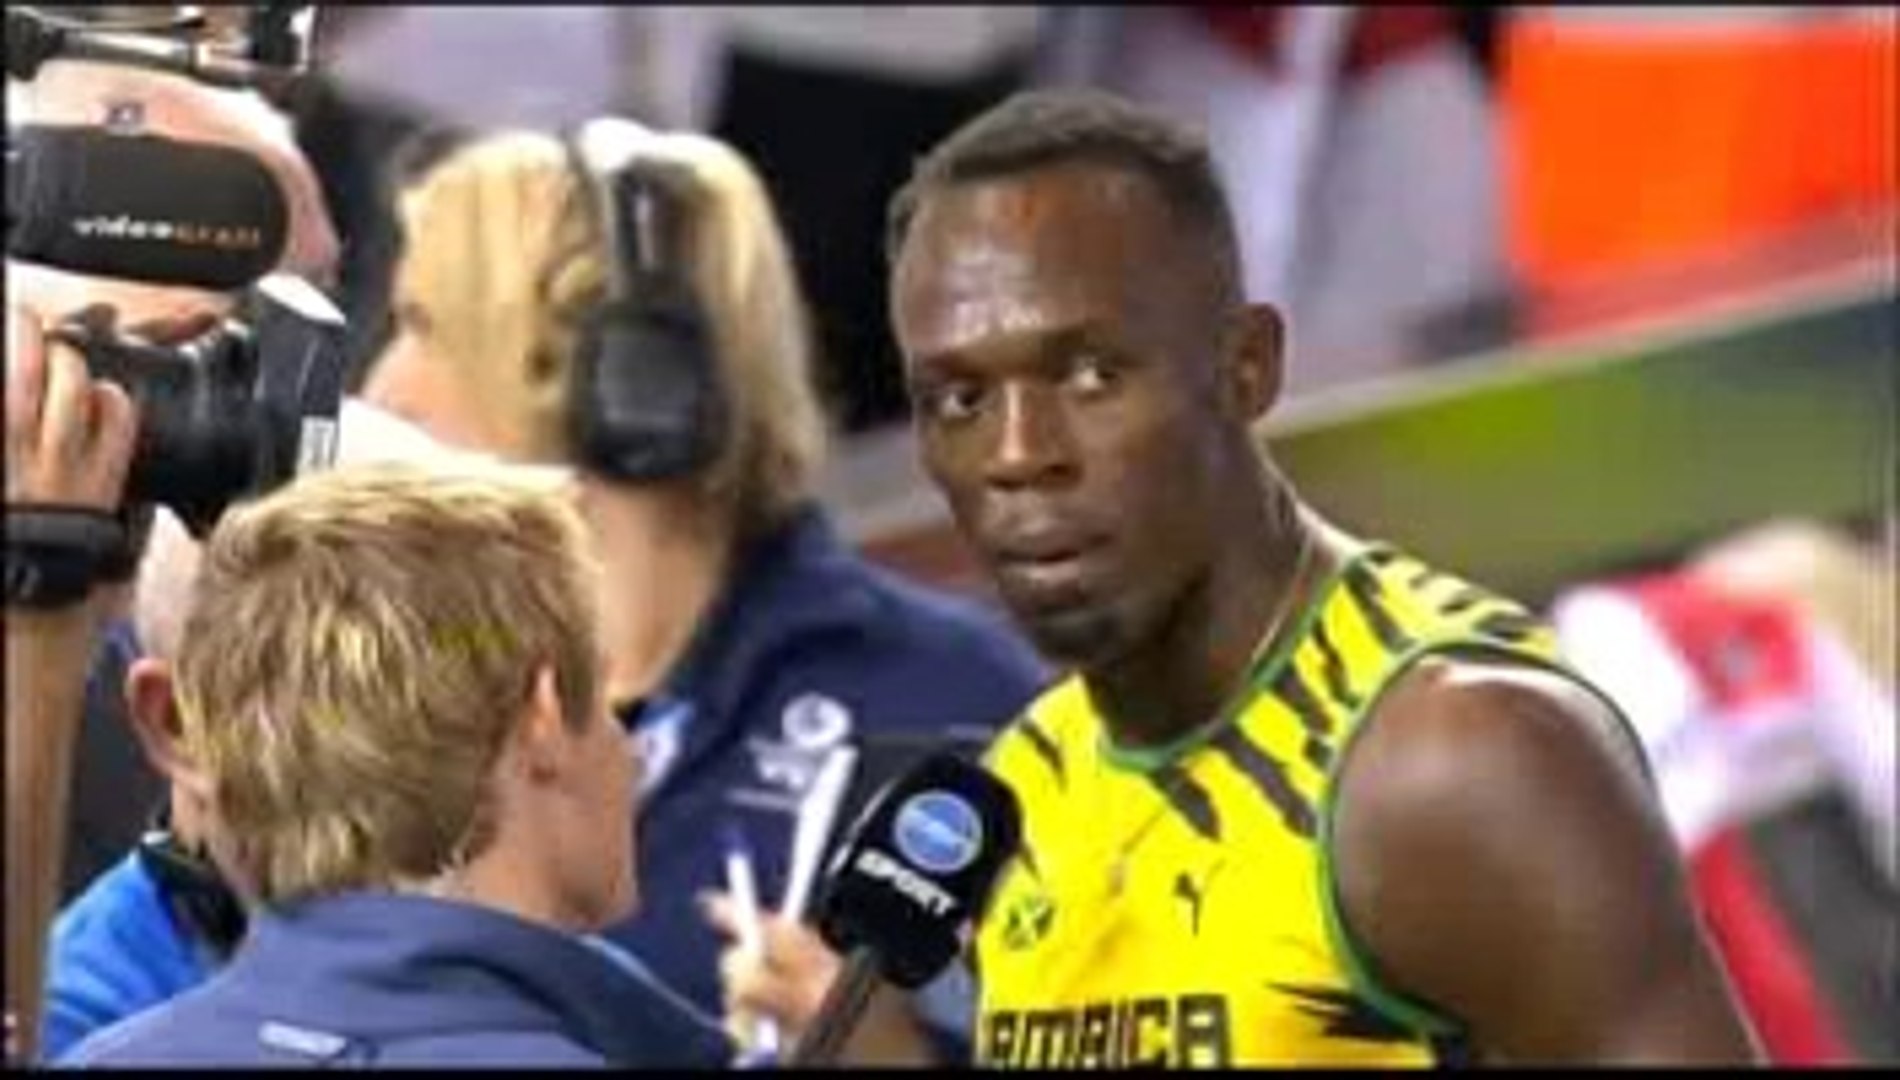 2014 Commonwealth Games - Usain Bolt speaks